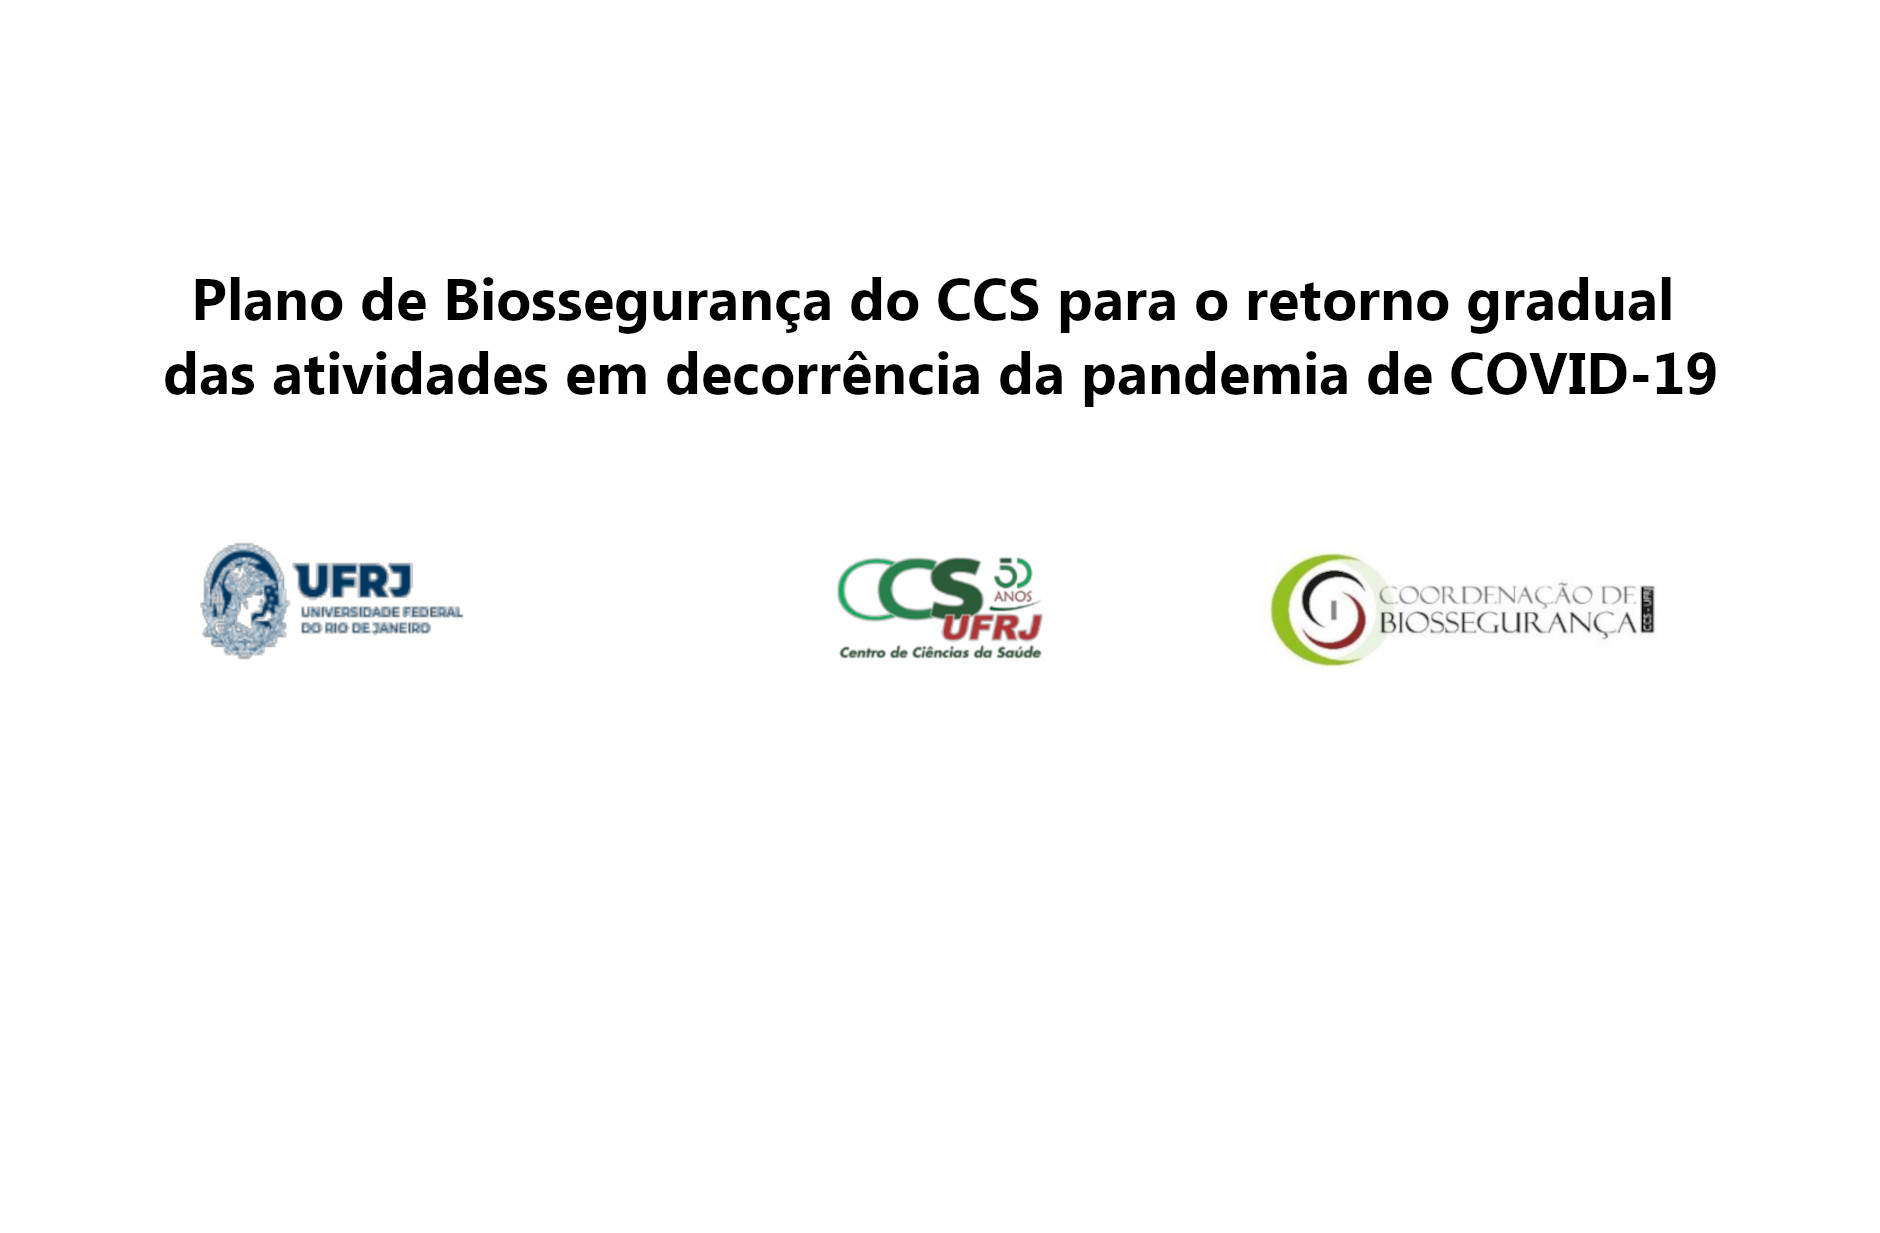 Você está visualizando atualmente “Plano de Biossegurança do CCS para o retorno gradual das atividades em decorrência da pandemia de COVID-19”.